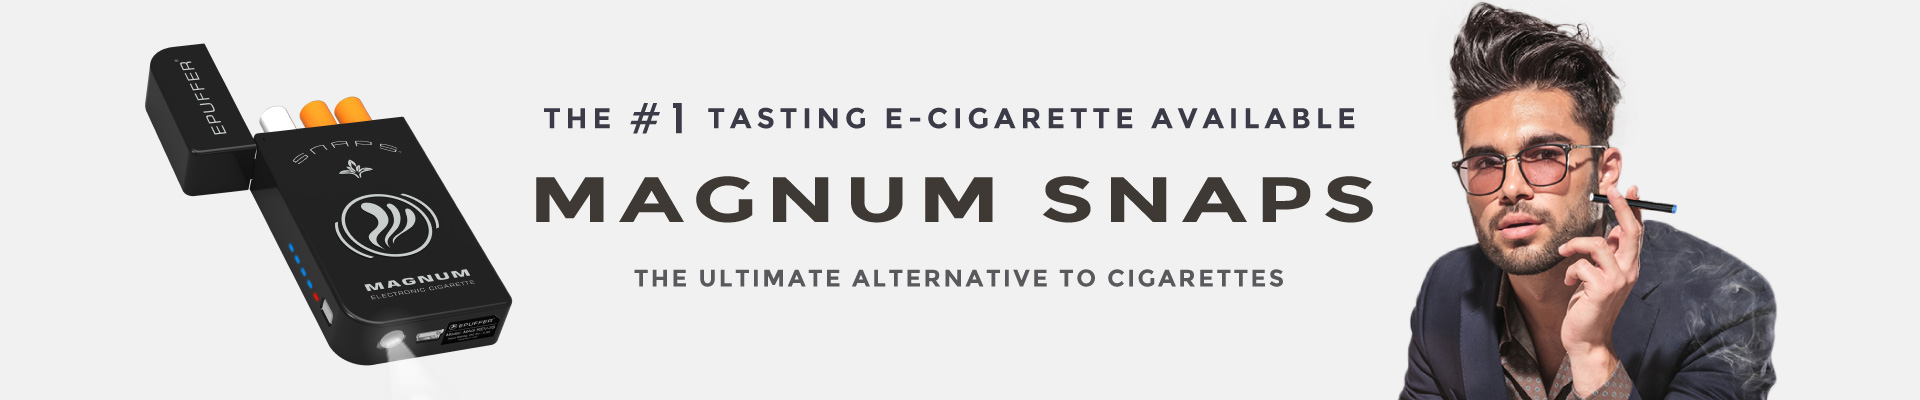 Magnum Snaps E-Cigarette